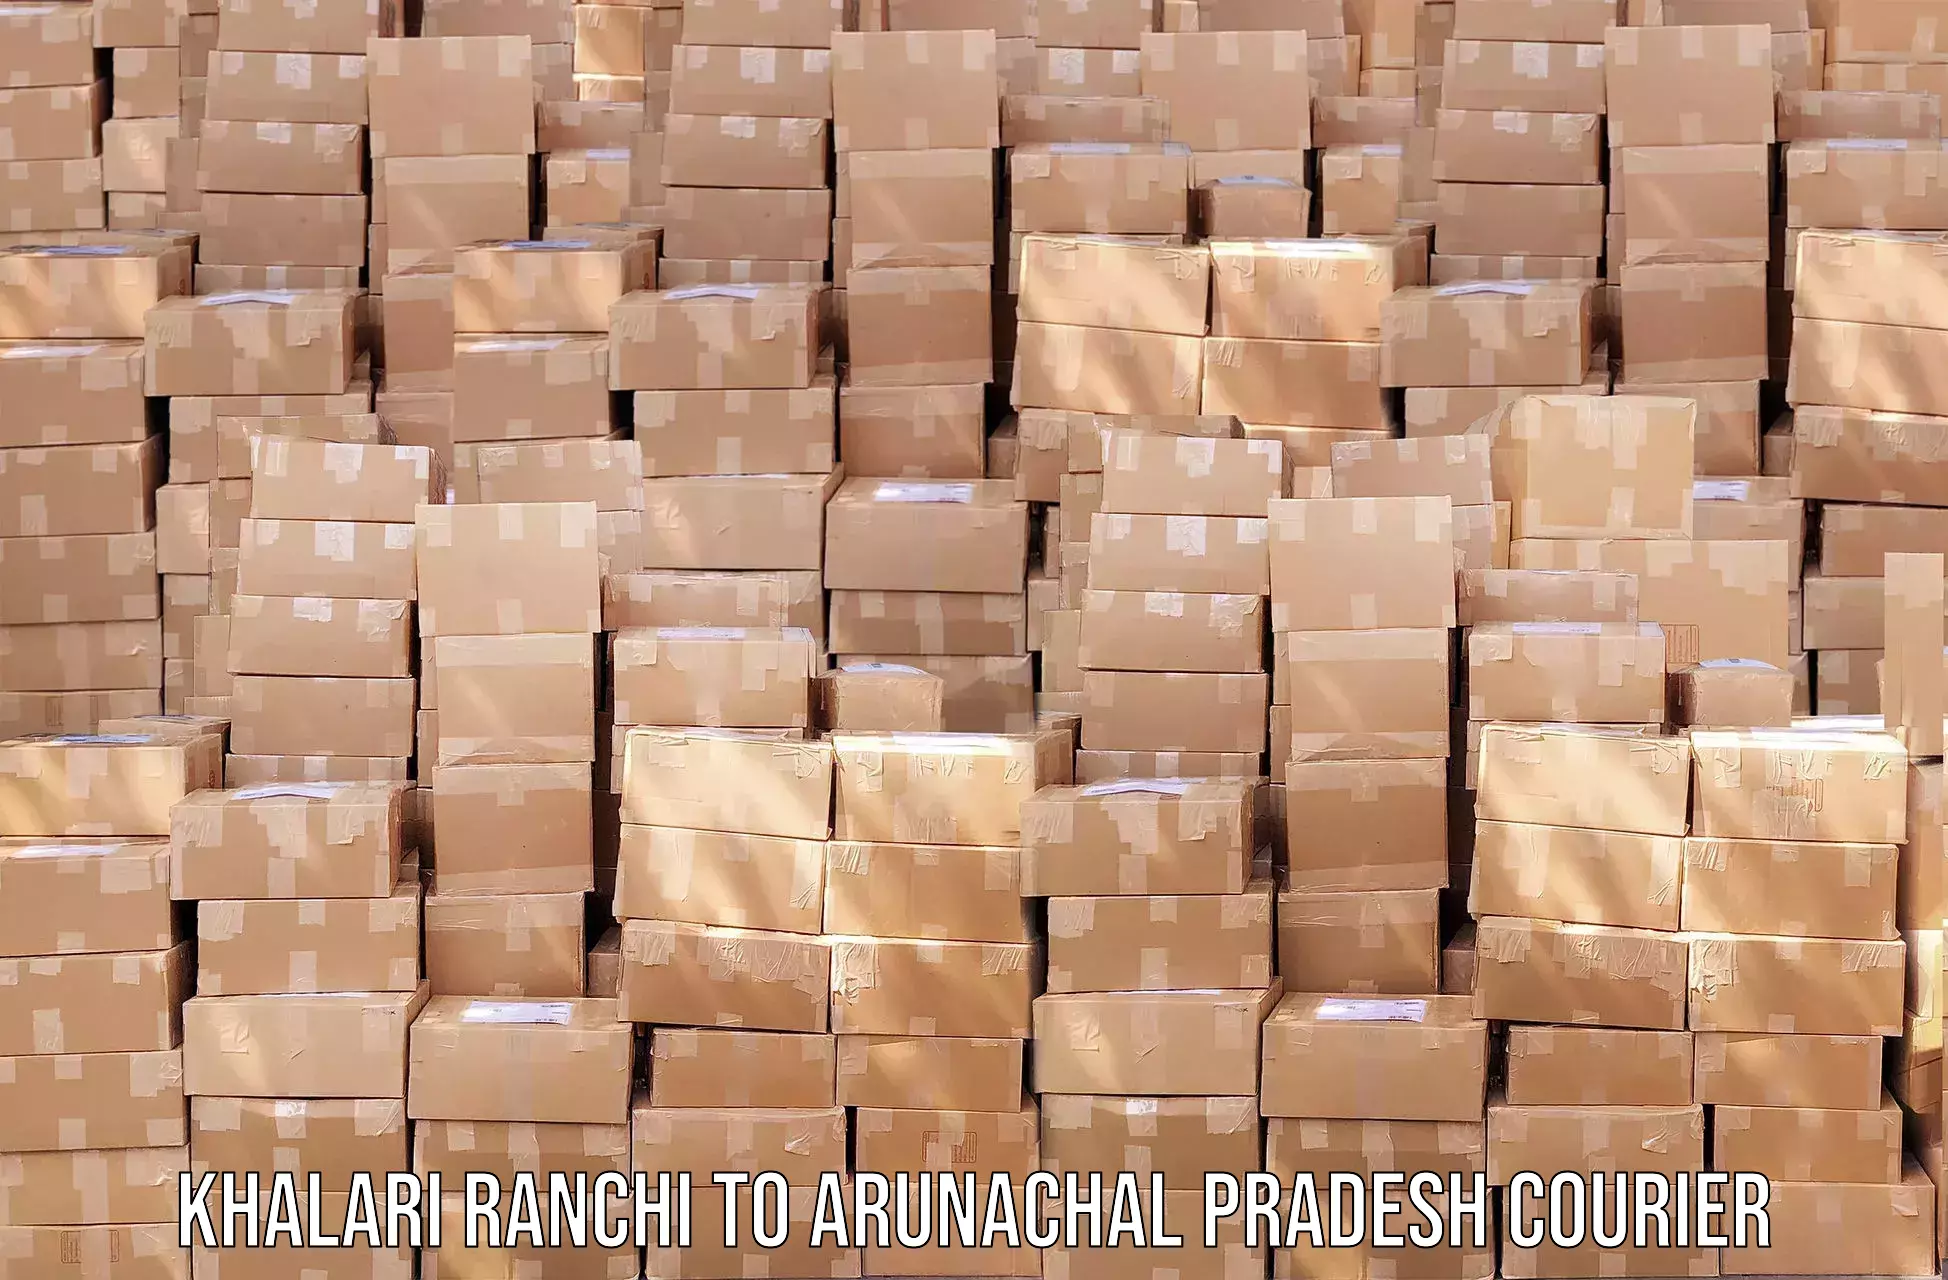 Reliable logistics providers Khalari Ranchi to Dibang Valley